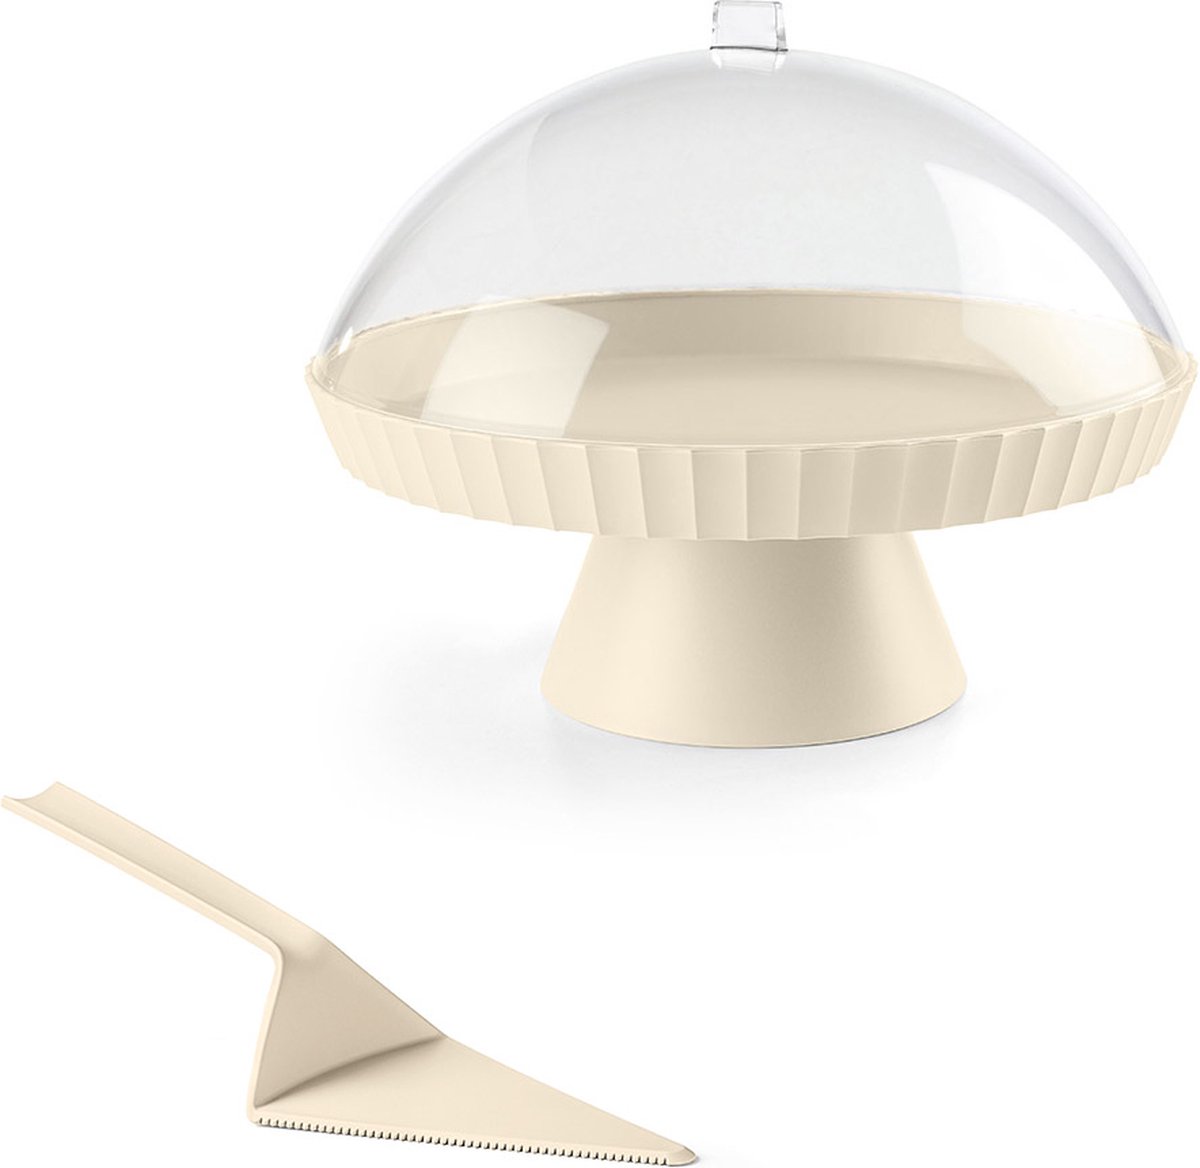 Kunststof taartplateau Agora - (∅ 30 x H 24 cm) beige - inclusief stolp en taartschep